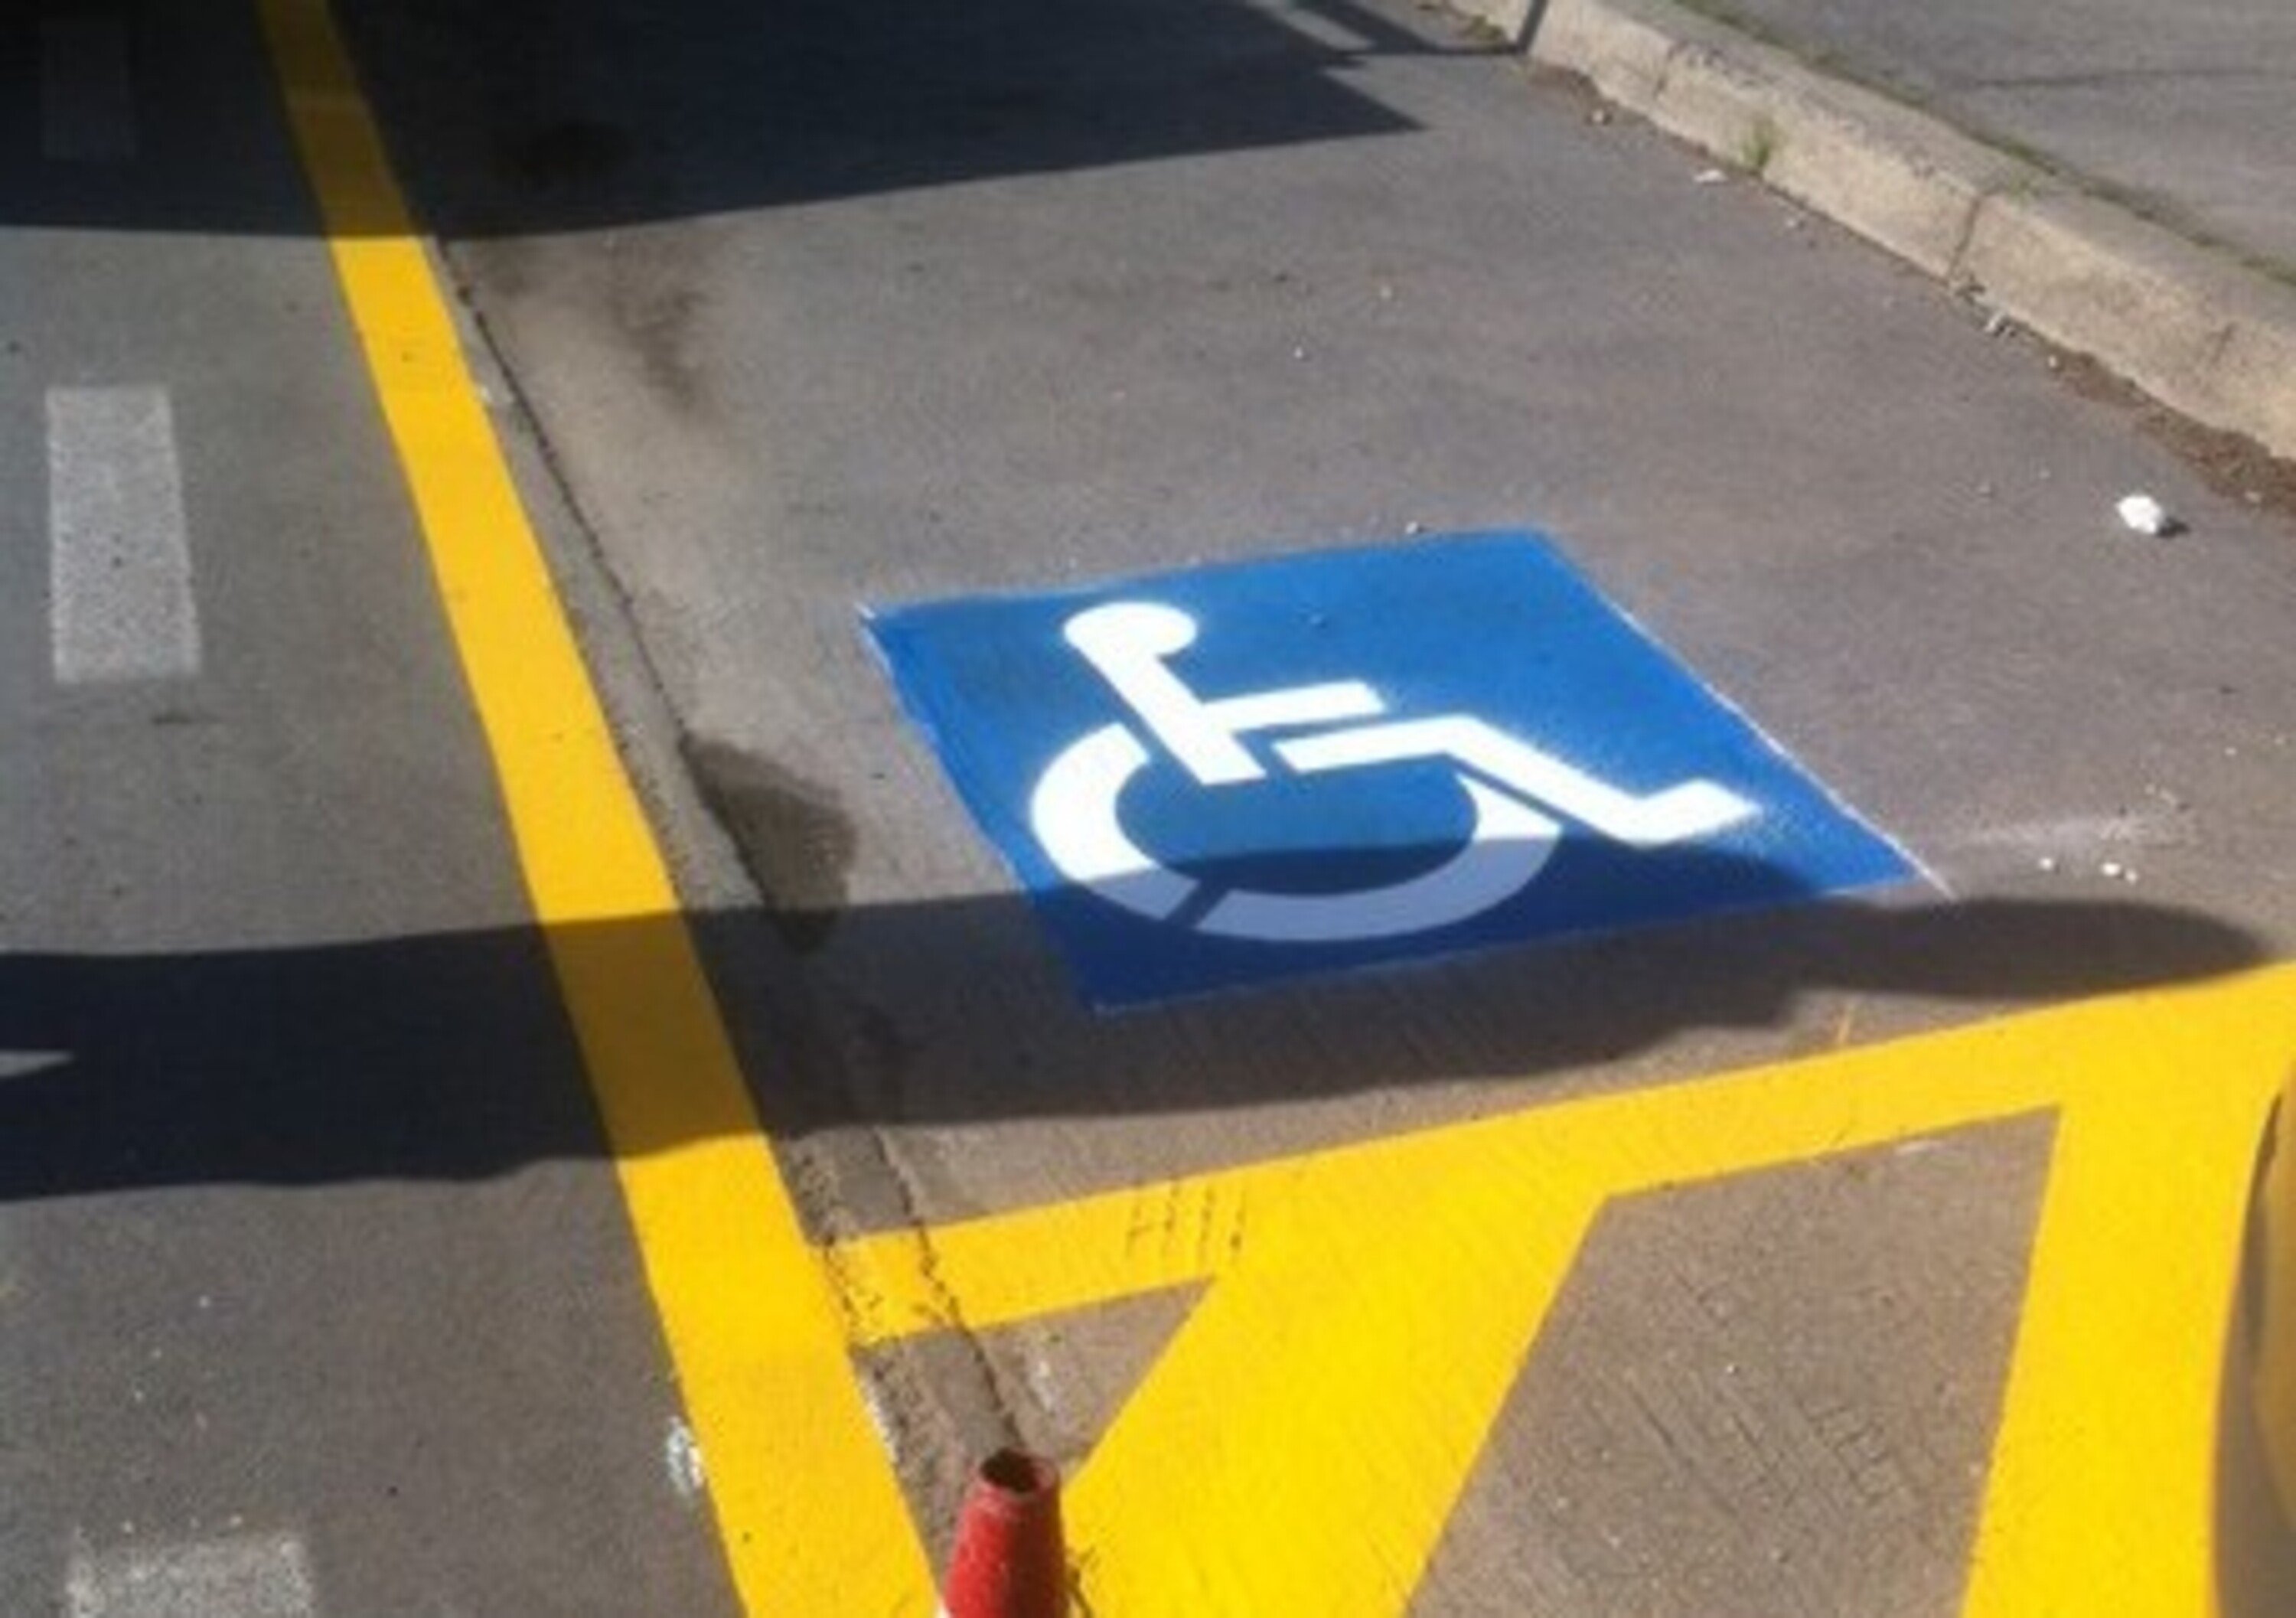 Parcheggia nel posto per disabili: condanna per violenza privata